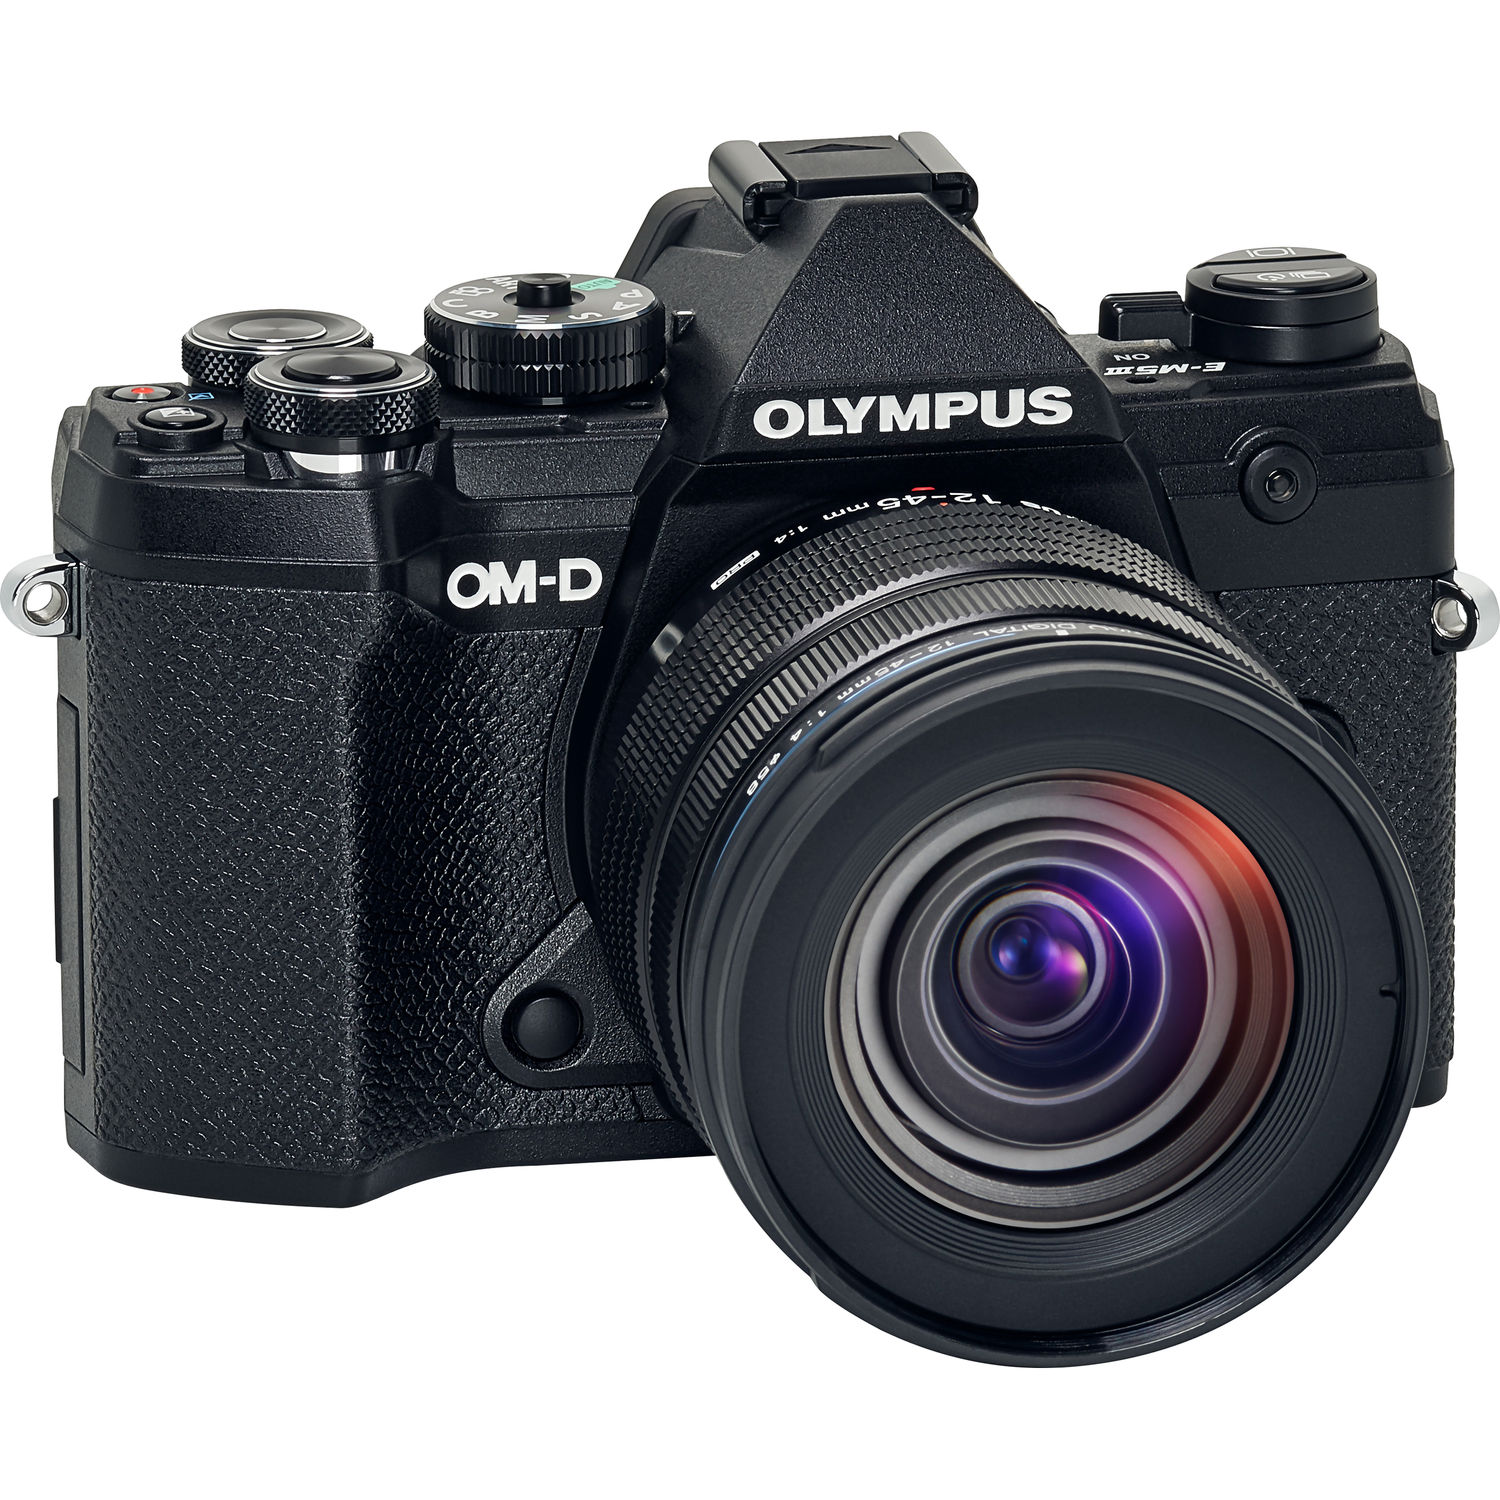 Olympus OM-D E-M5 Mark III Black 12-45mm F4.0 PRO Lens Kit